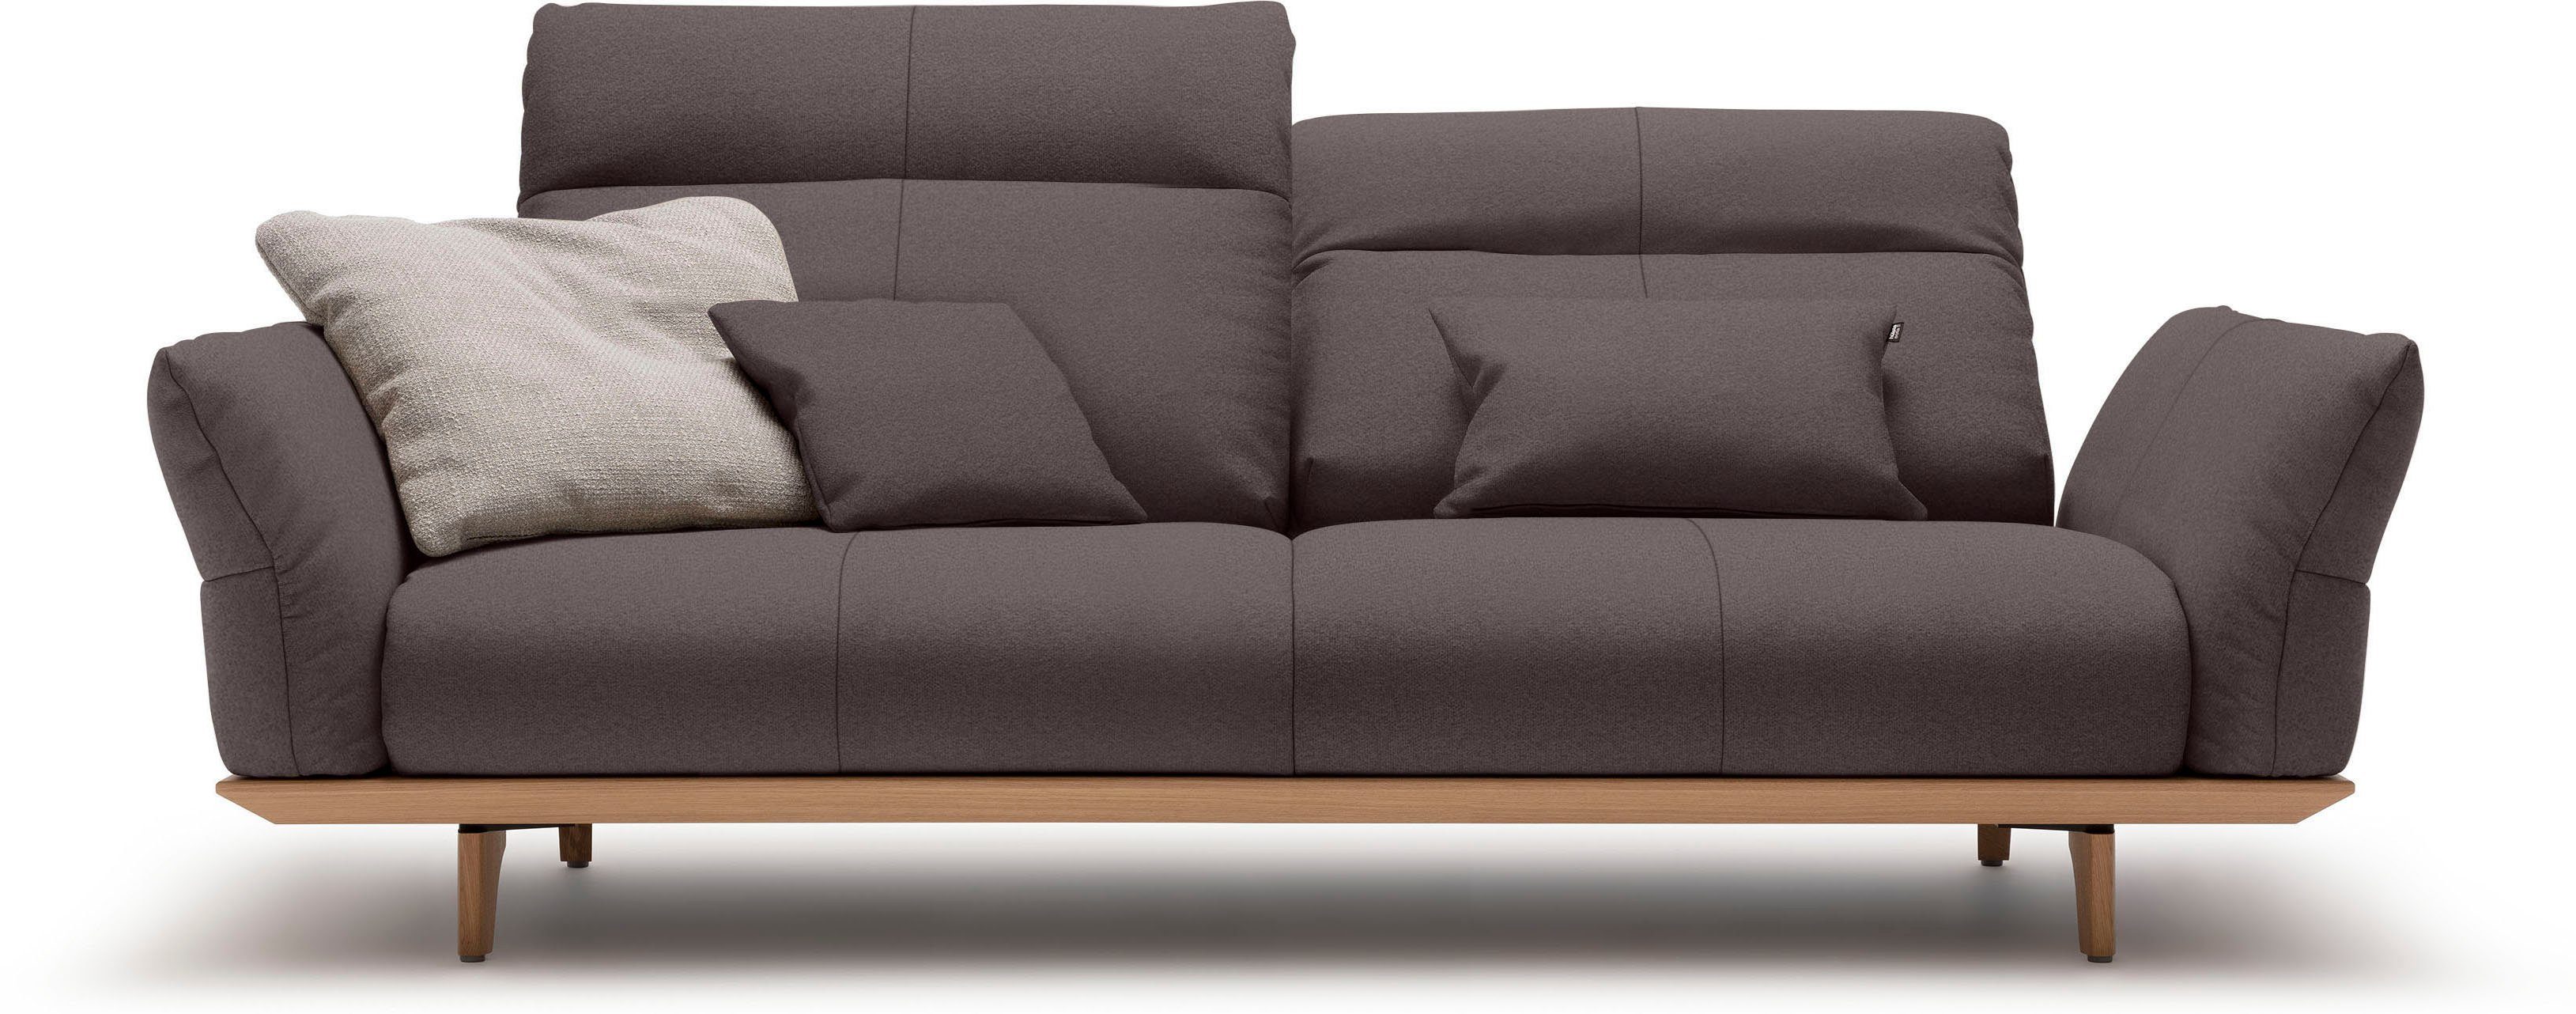 huelsta sofa 3-zitsbank hs.460 onderstel in eiken, poten in natuurlijk eiken, breedte 208 cm grijs